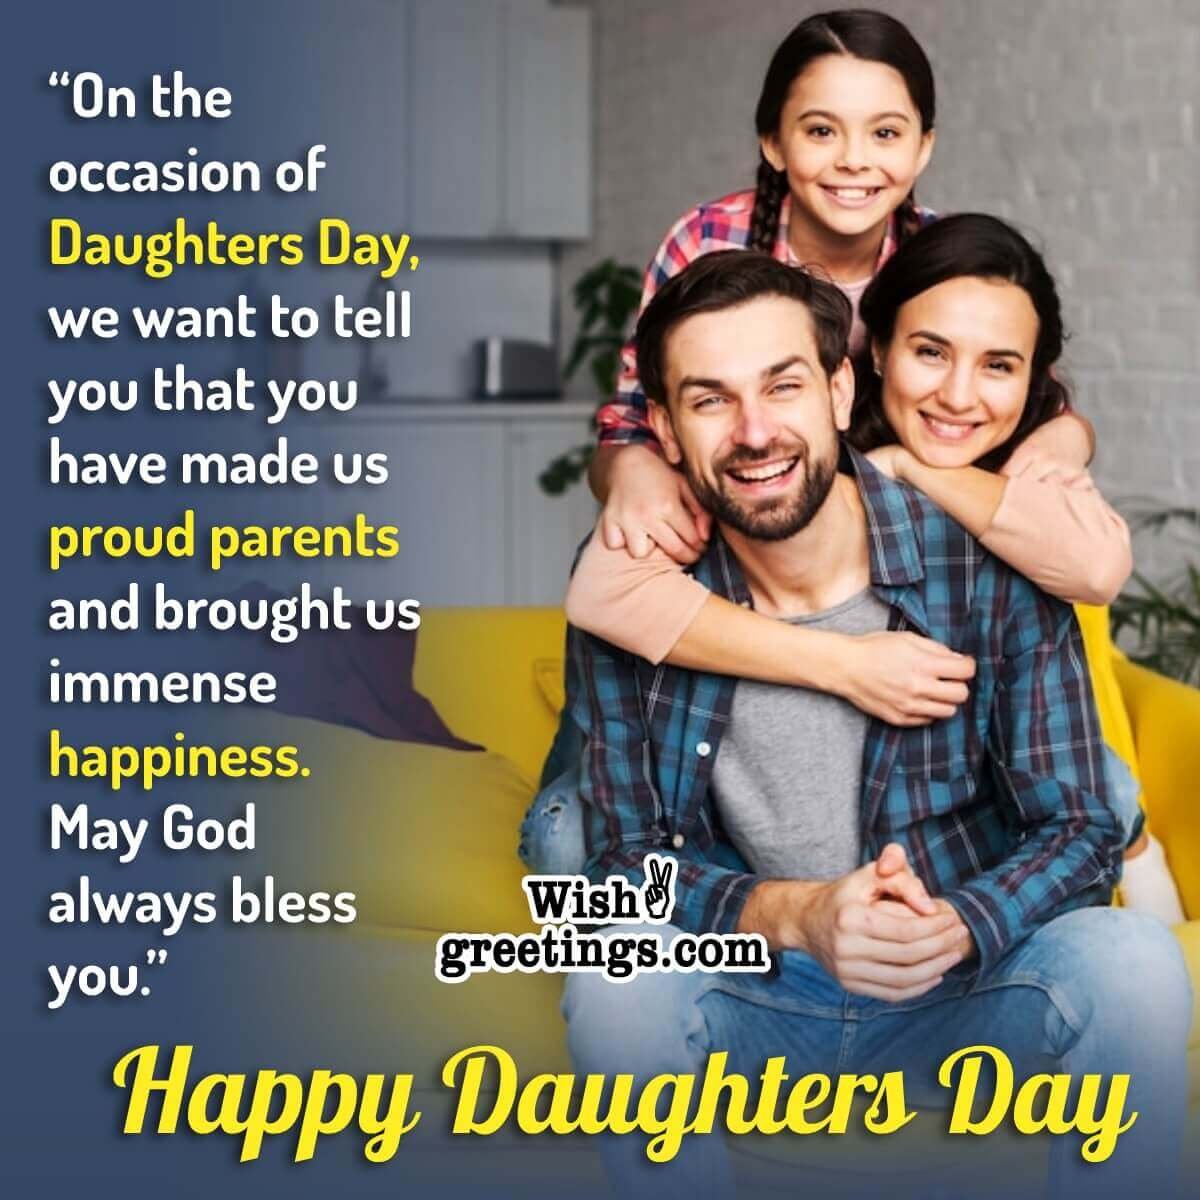 Happy Daughter’s Day Wish Photo